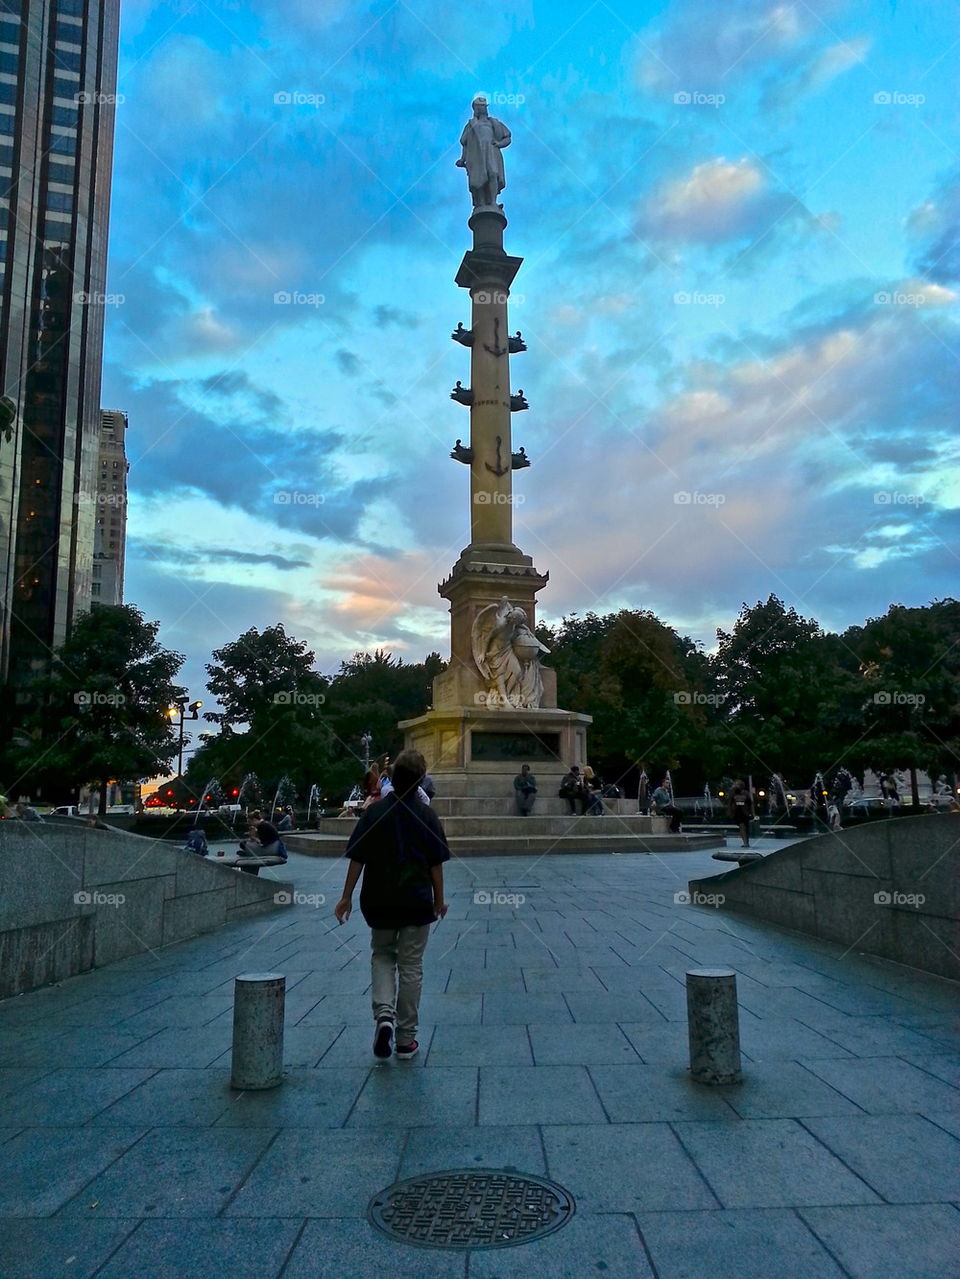 Columbus Monument 